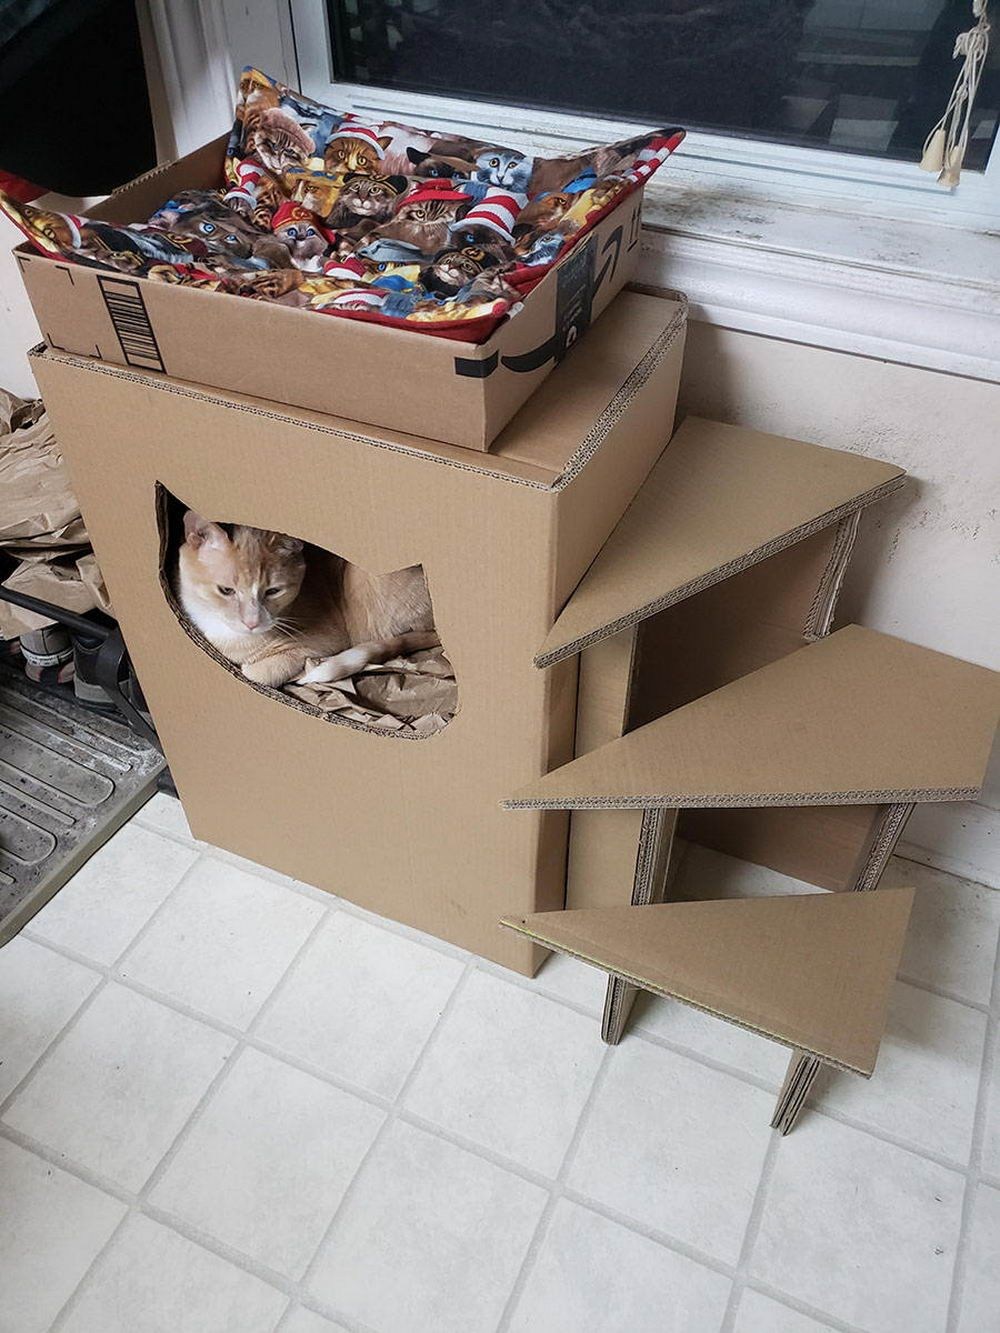 Как сделать из коробок домик для кошки: пошаговая инструкция по изготовлению домика для котов из картона и футболки